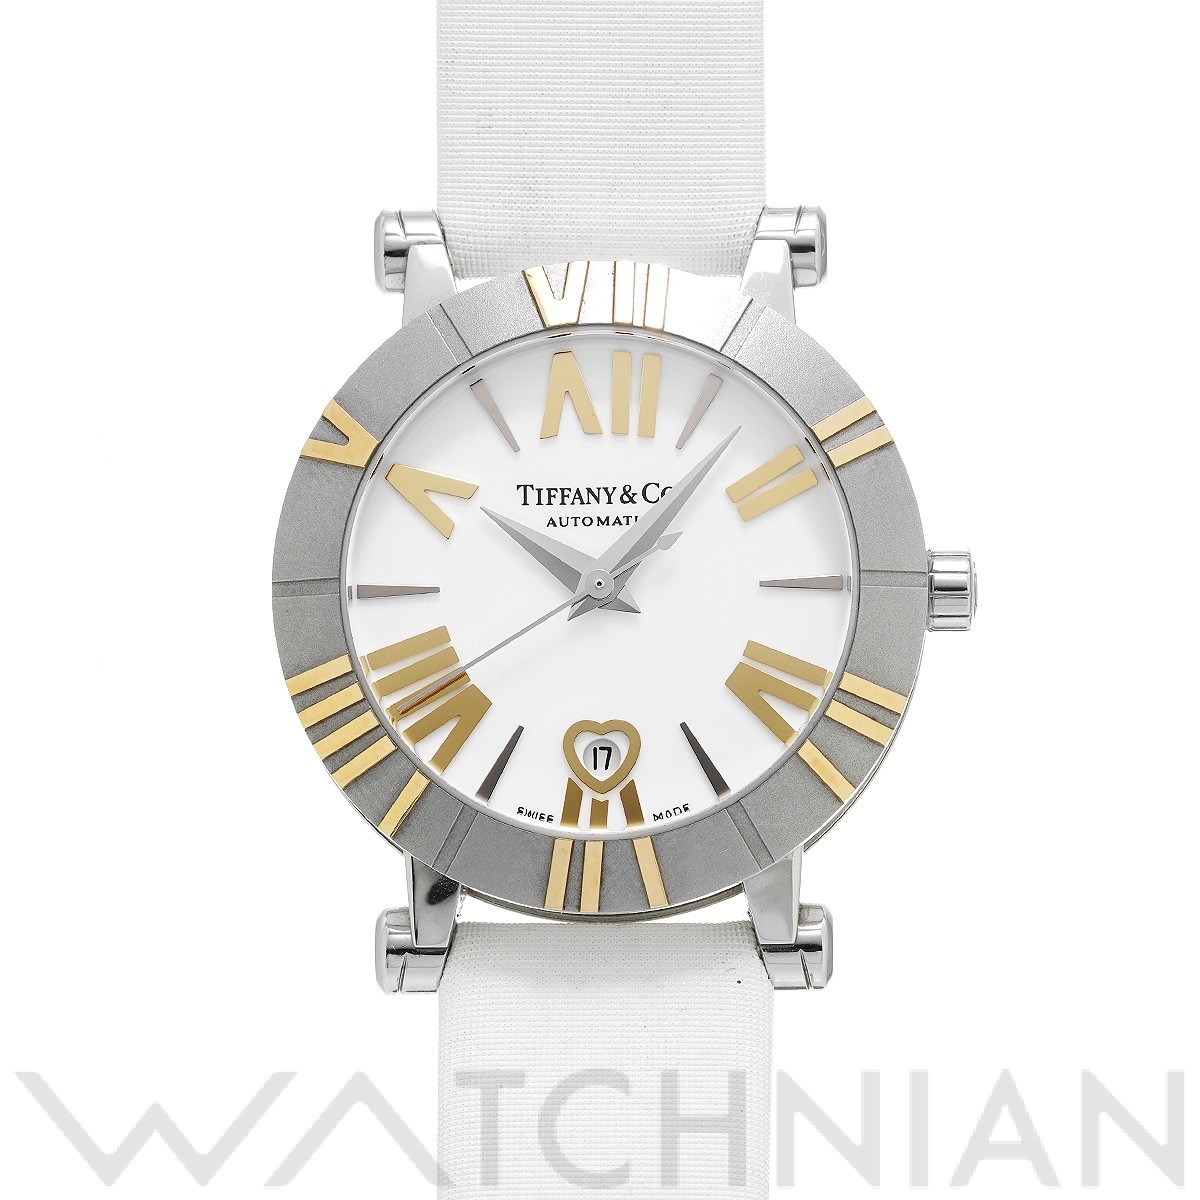 ティファニー / TIFFANY & Co. アトラス オートマティック Z1300.68.16A20A41A ホワイト レディース 時計  【中古】【wristwatch】